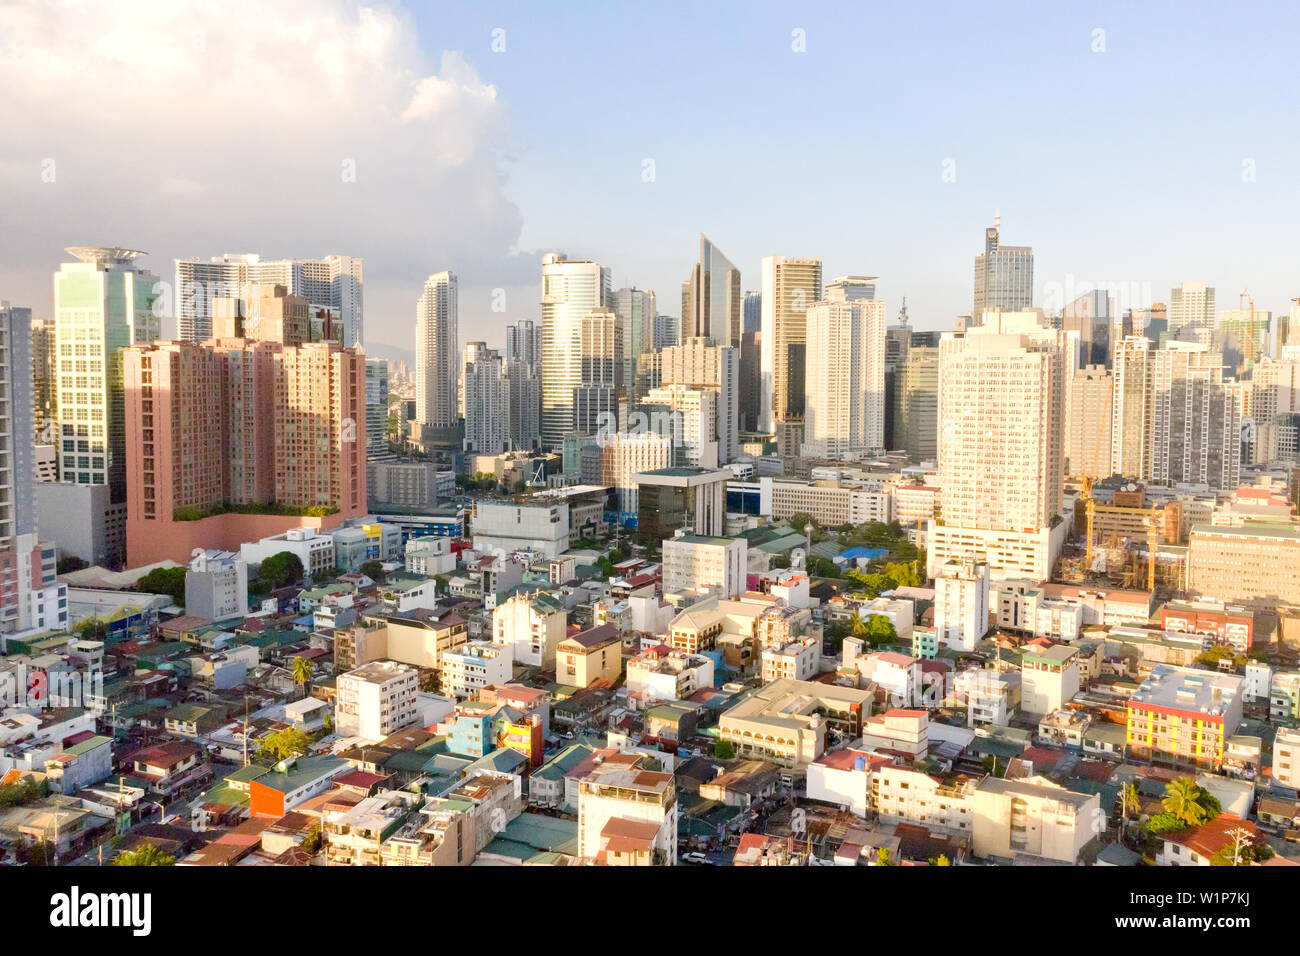 Paesaggio di Makati, il centro affari di Manila, vista dall'alto. Metropoli asiatica al mattino, vista dall'alto. Grattacieli e quartieri residenziali, la capitale delle Filippine. Città moderna. Foto Stock